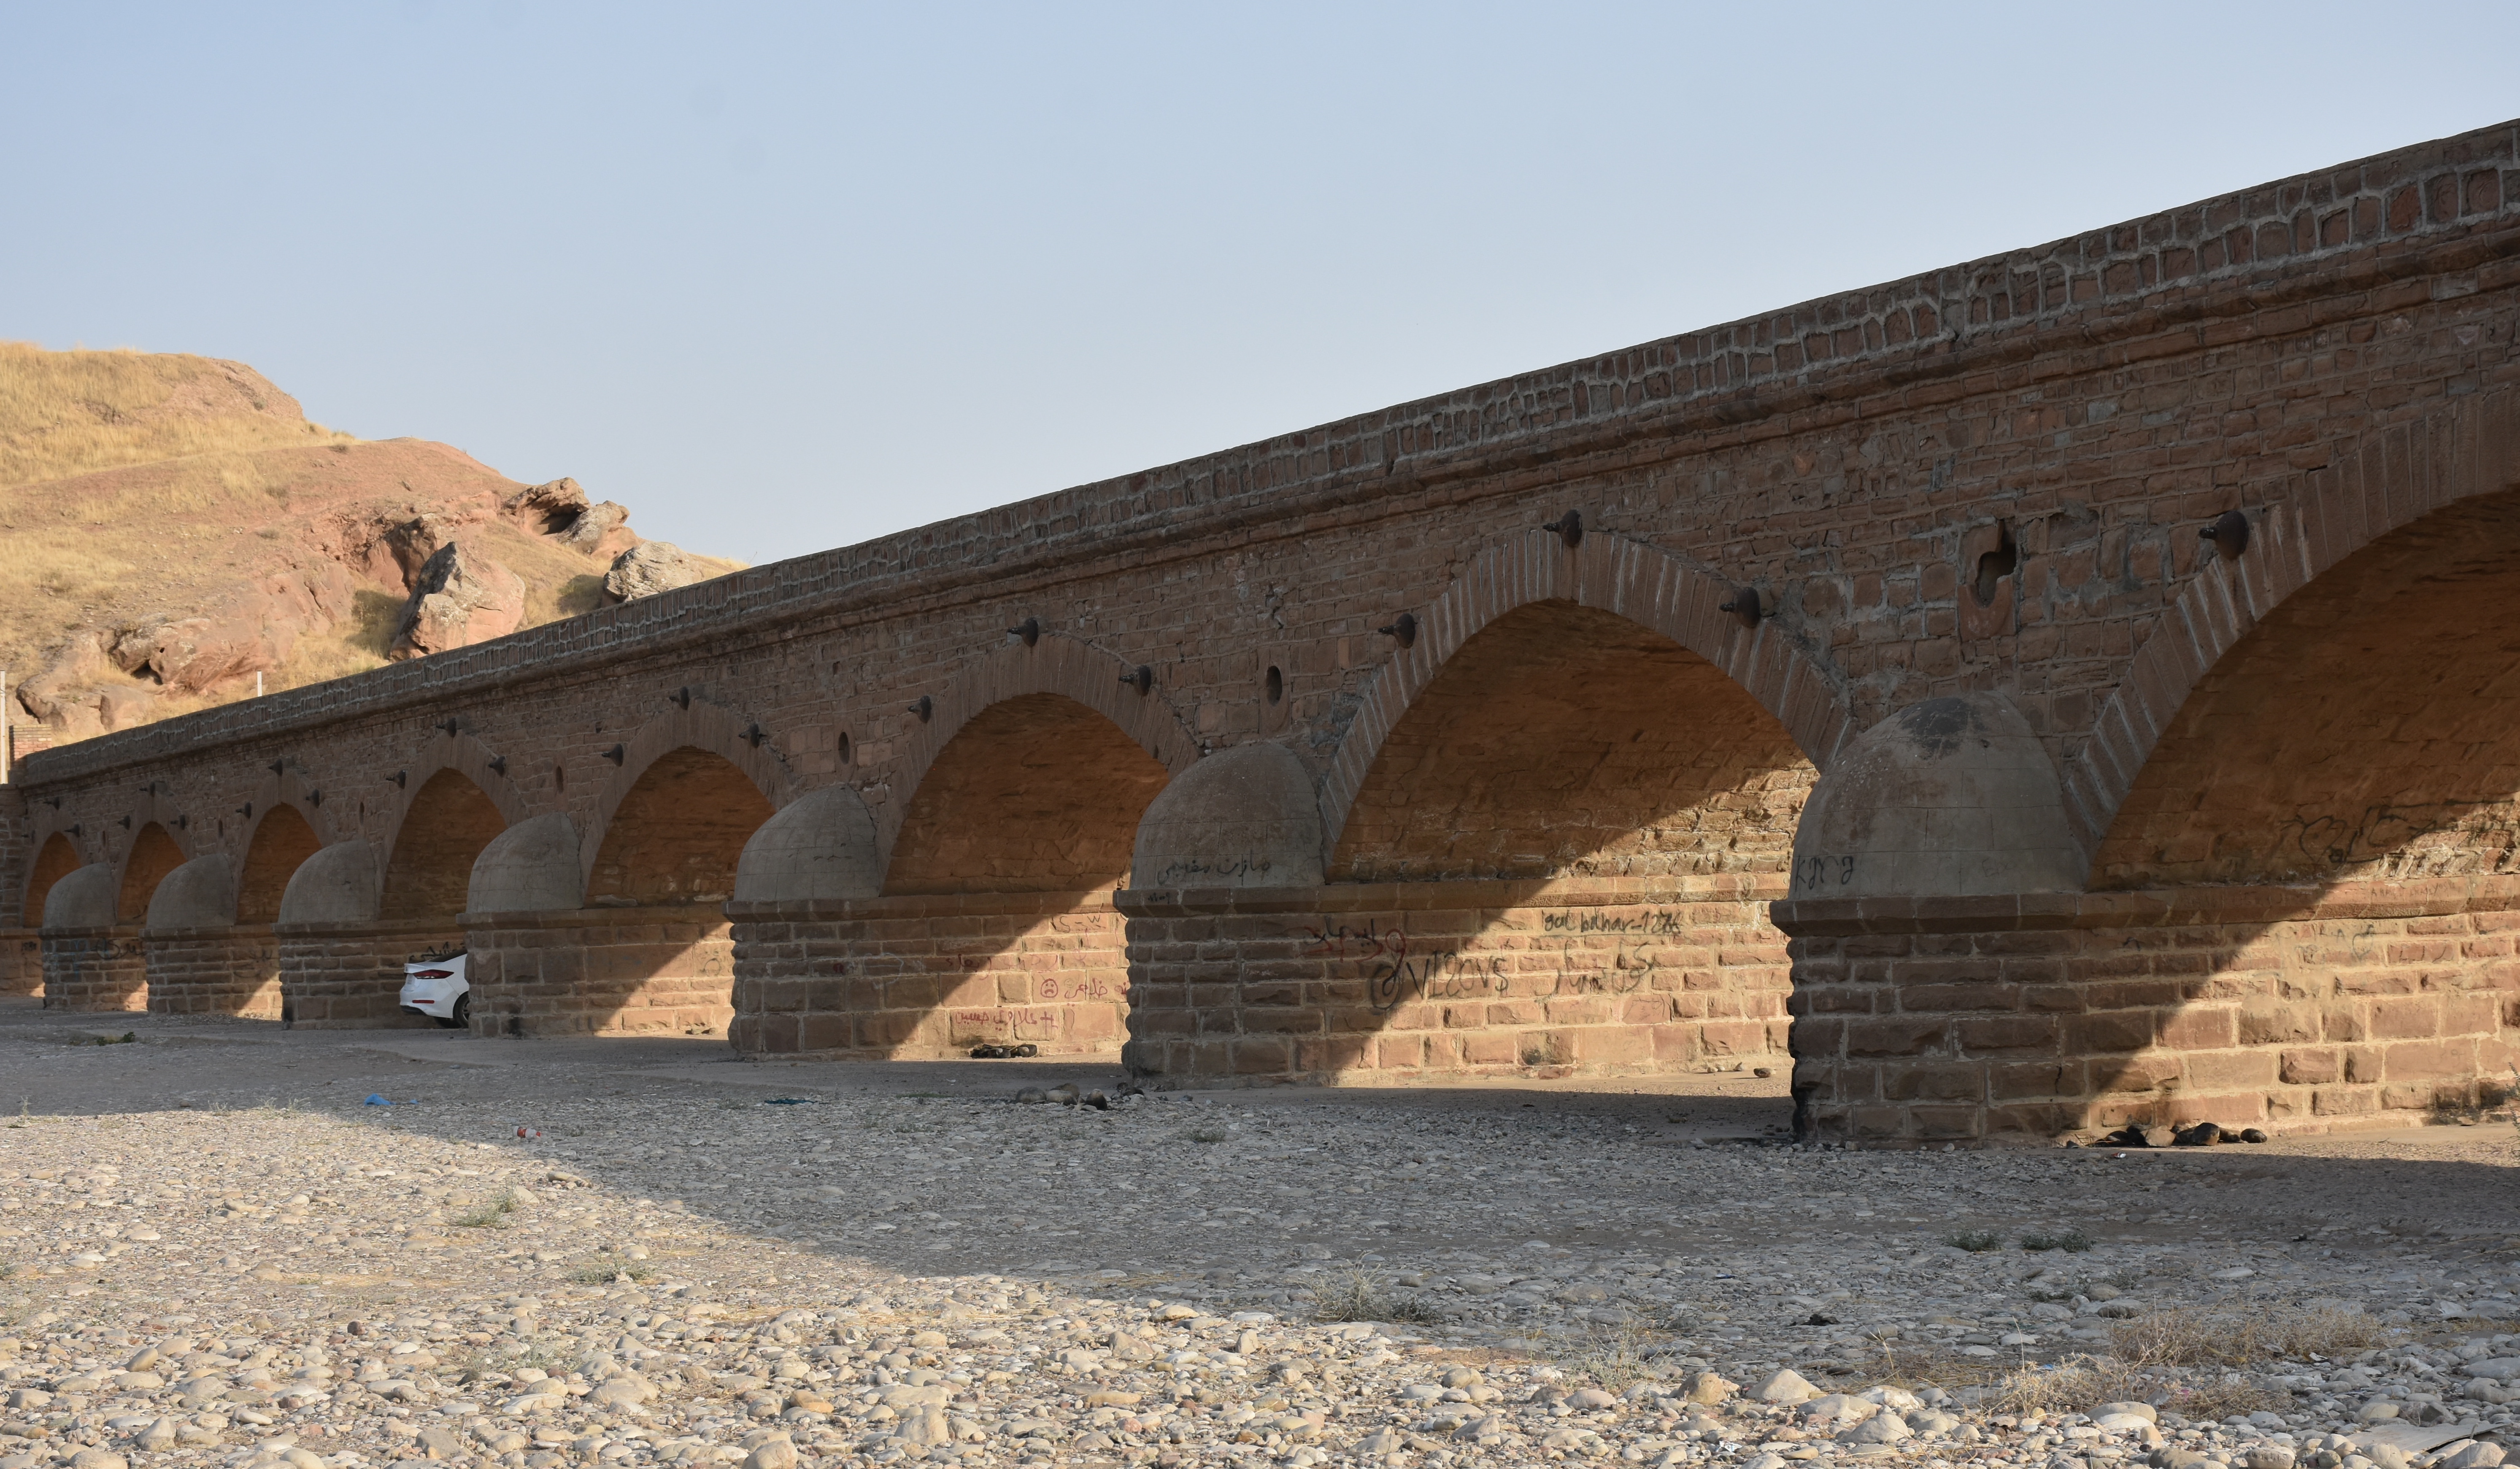 رغم مرور 137 عاماً على تشييده، لا يزال جسر داقوق العثماني في محافظة كركوك العراقية، صامداً كمعلم أثري تاريخي. الجسر الذي كان يصل سابقاً بين كركوك وبغداد، يعد الآن مقصد سكان المنطقة في مواسم الربيع، للتنزه. ( Ali Makram Ghareeb - وكالة الأناضول )